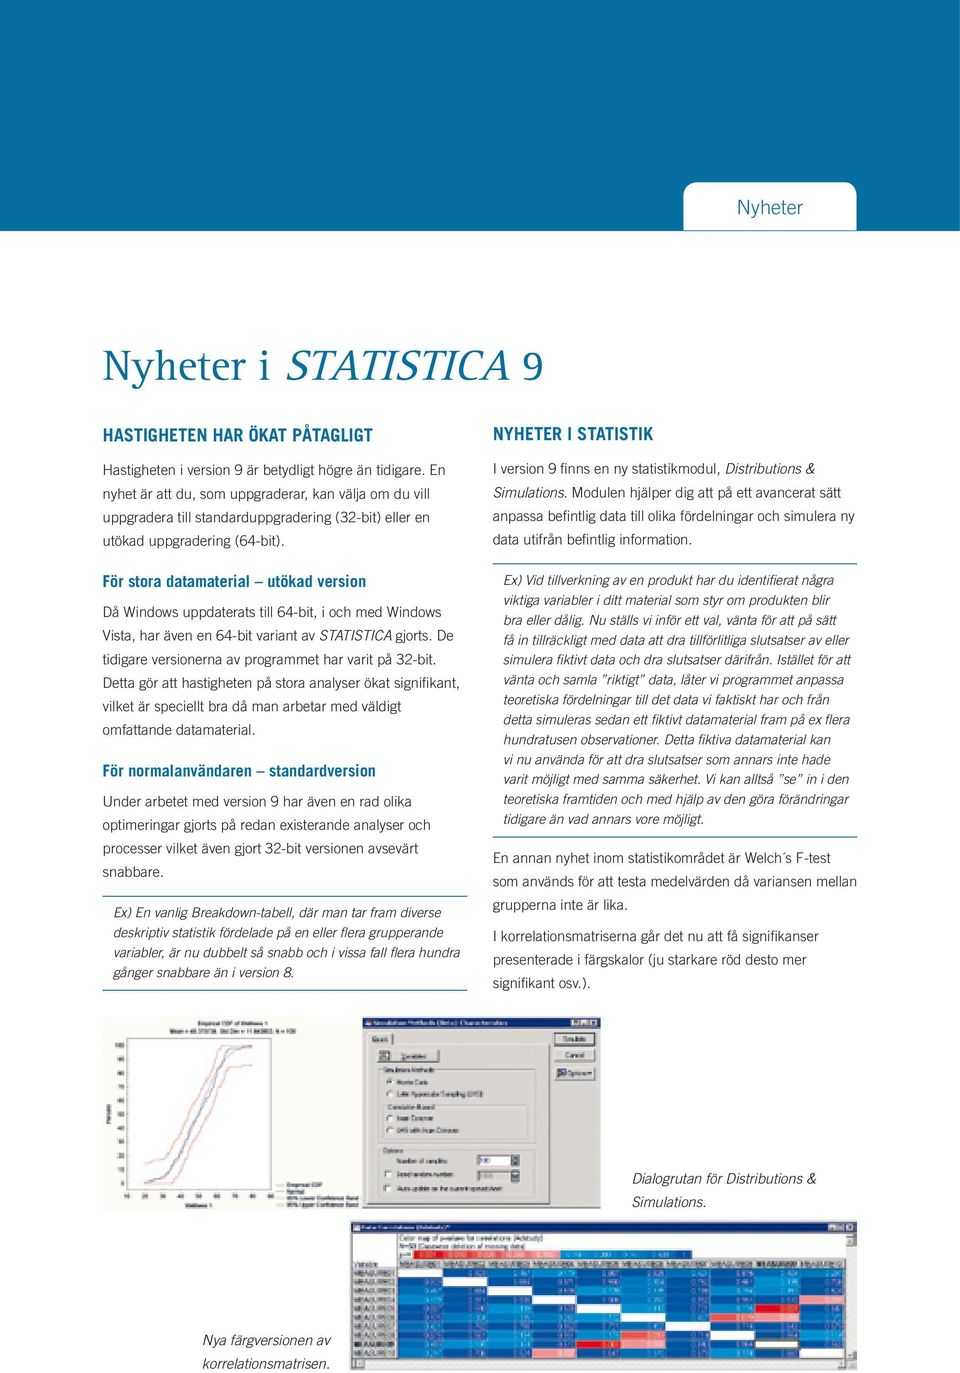 Nyheter i statistik I version 9 finns en ny statistikmodul, Distributions & Simulations.